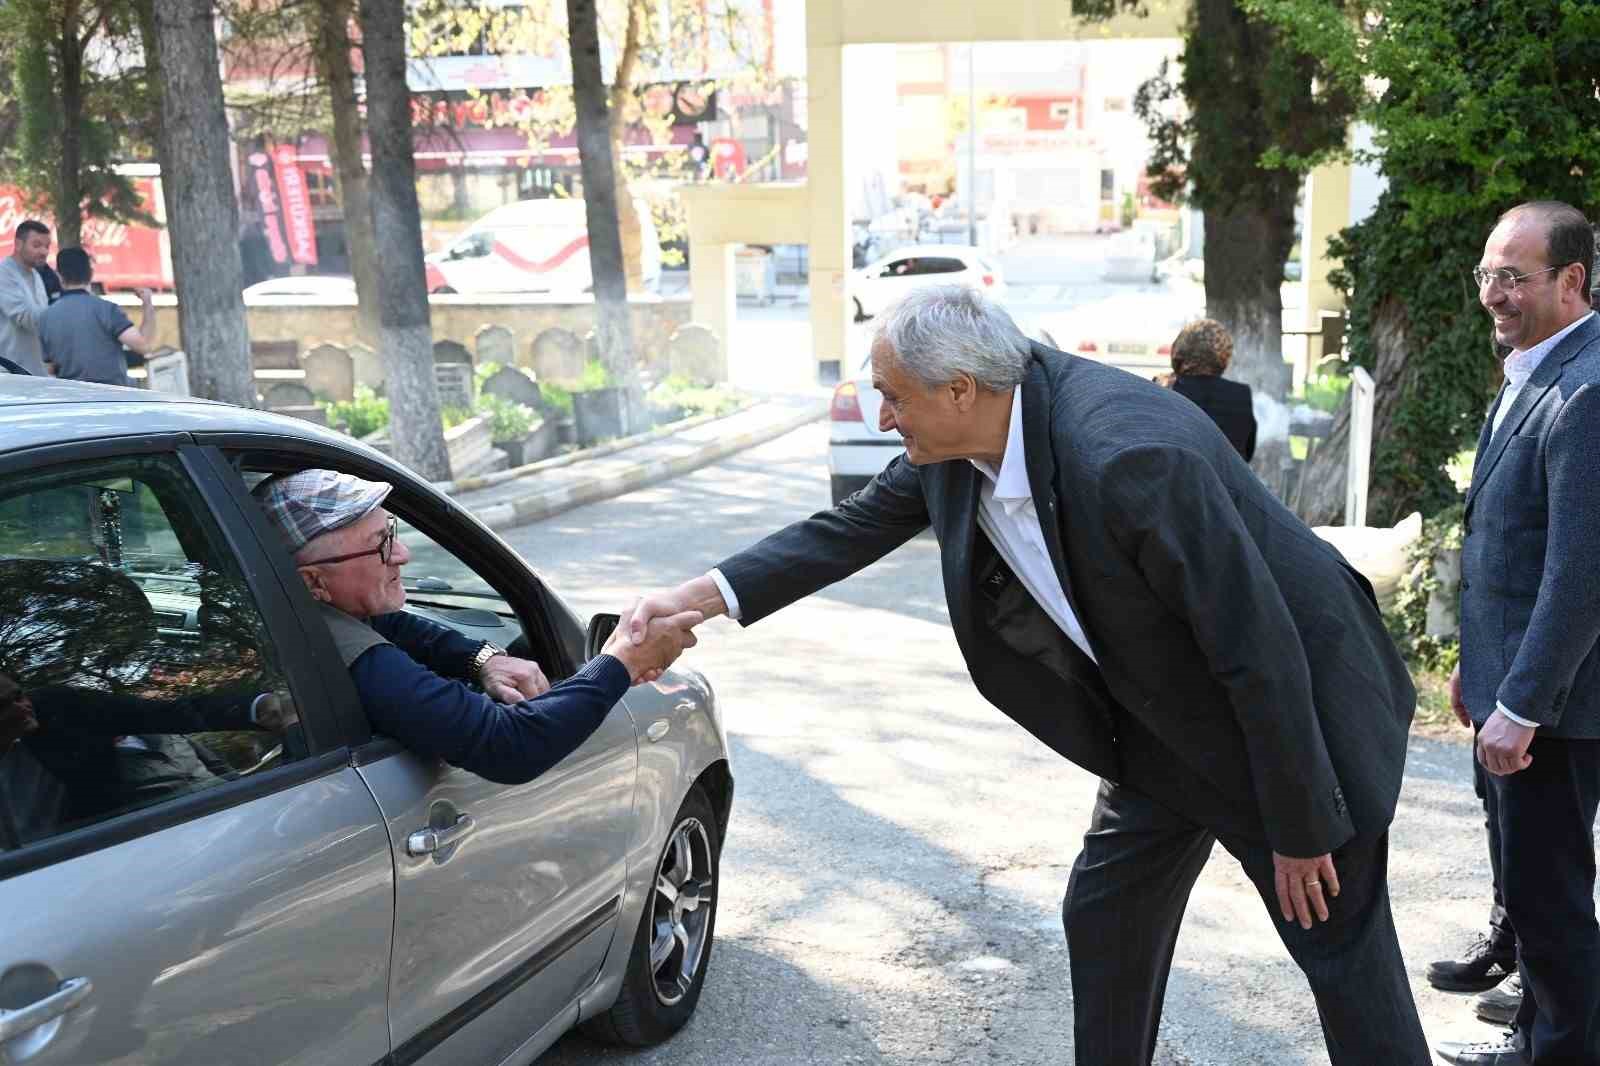 Başkan Bakkalcıoğlu, mezarlık ziyaretine gelen hemşehrilerinin bayramını kutladı
